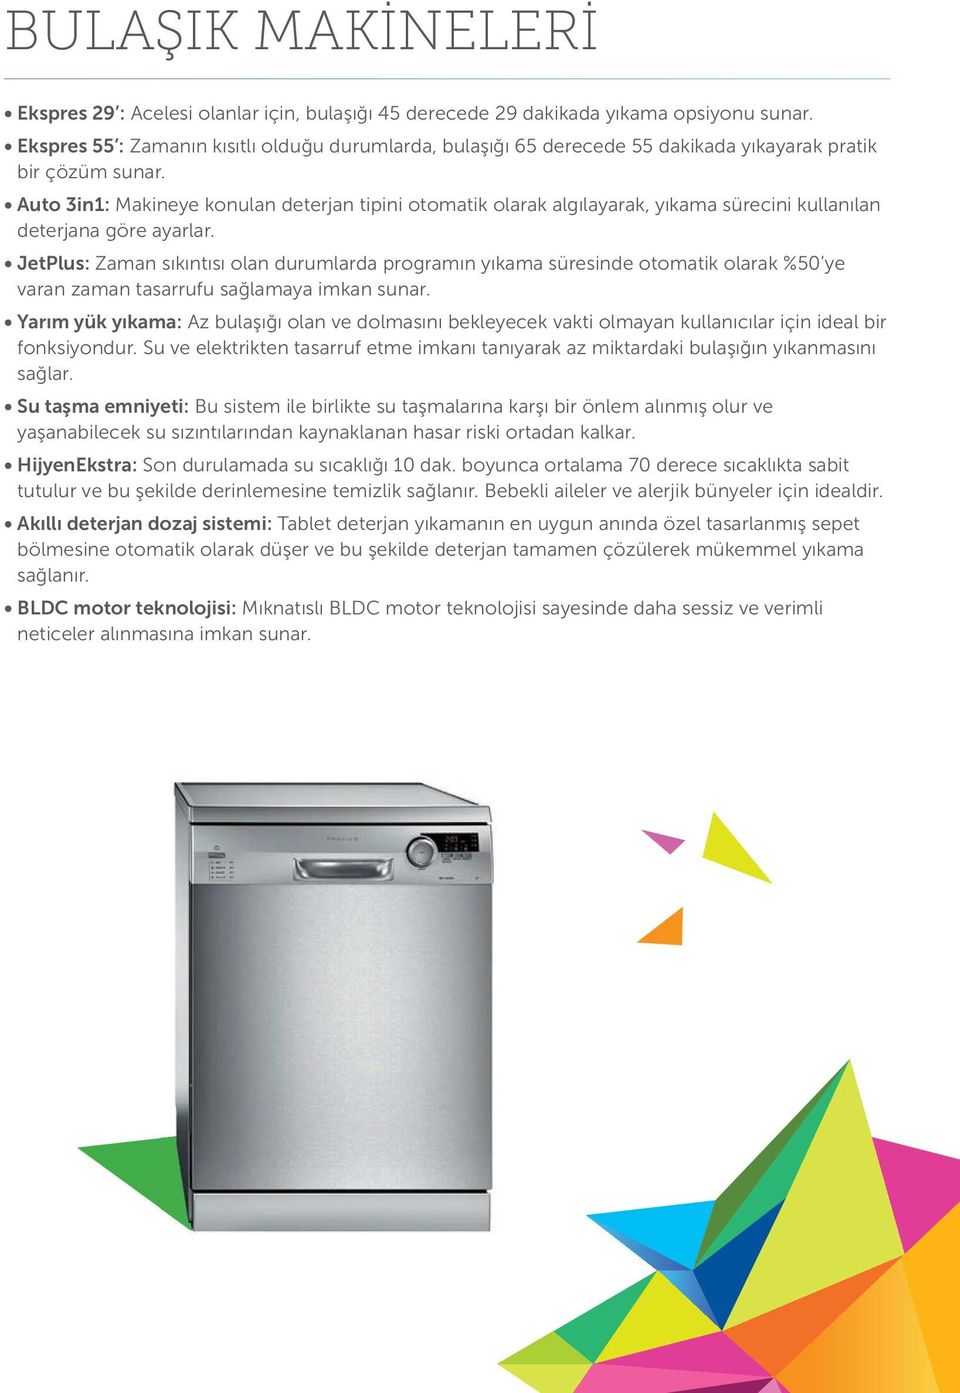 Auto 3in1: Makineye konulan deterjan tipini otomatik olarak algılayarak, yıkama sürecini kullanılan deterjana göre ayarlar.